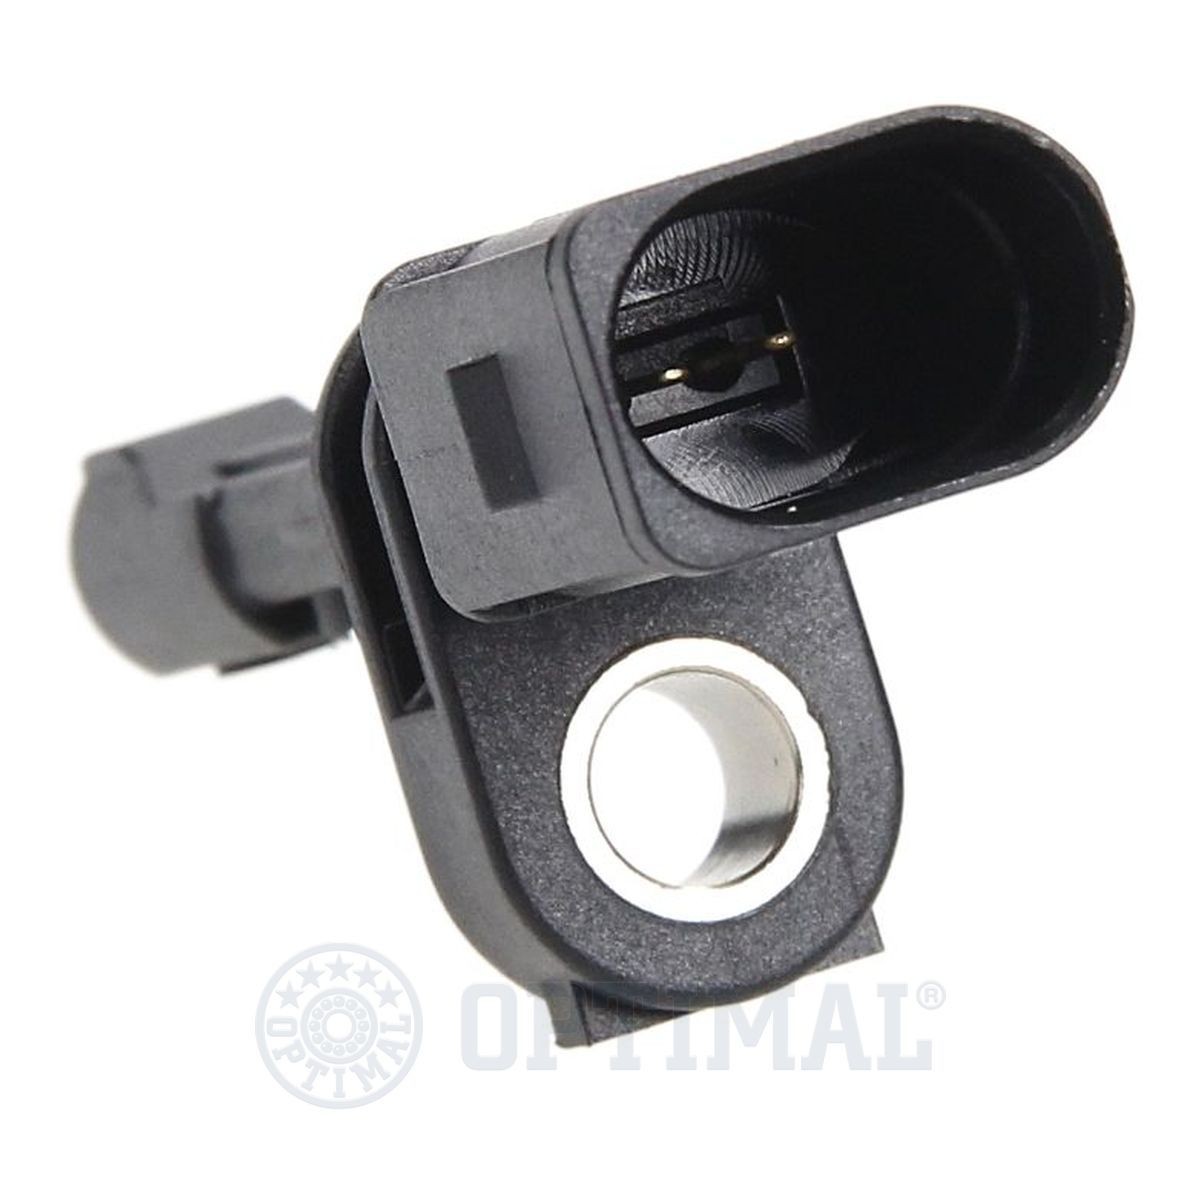 06S470 Anti lock brake sensor OPTIMAL 06-S470 review and test